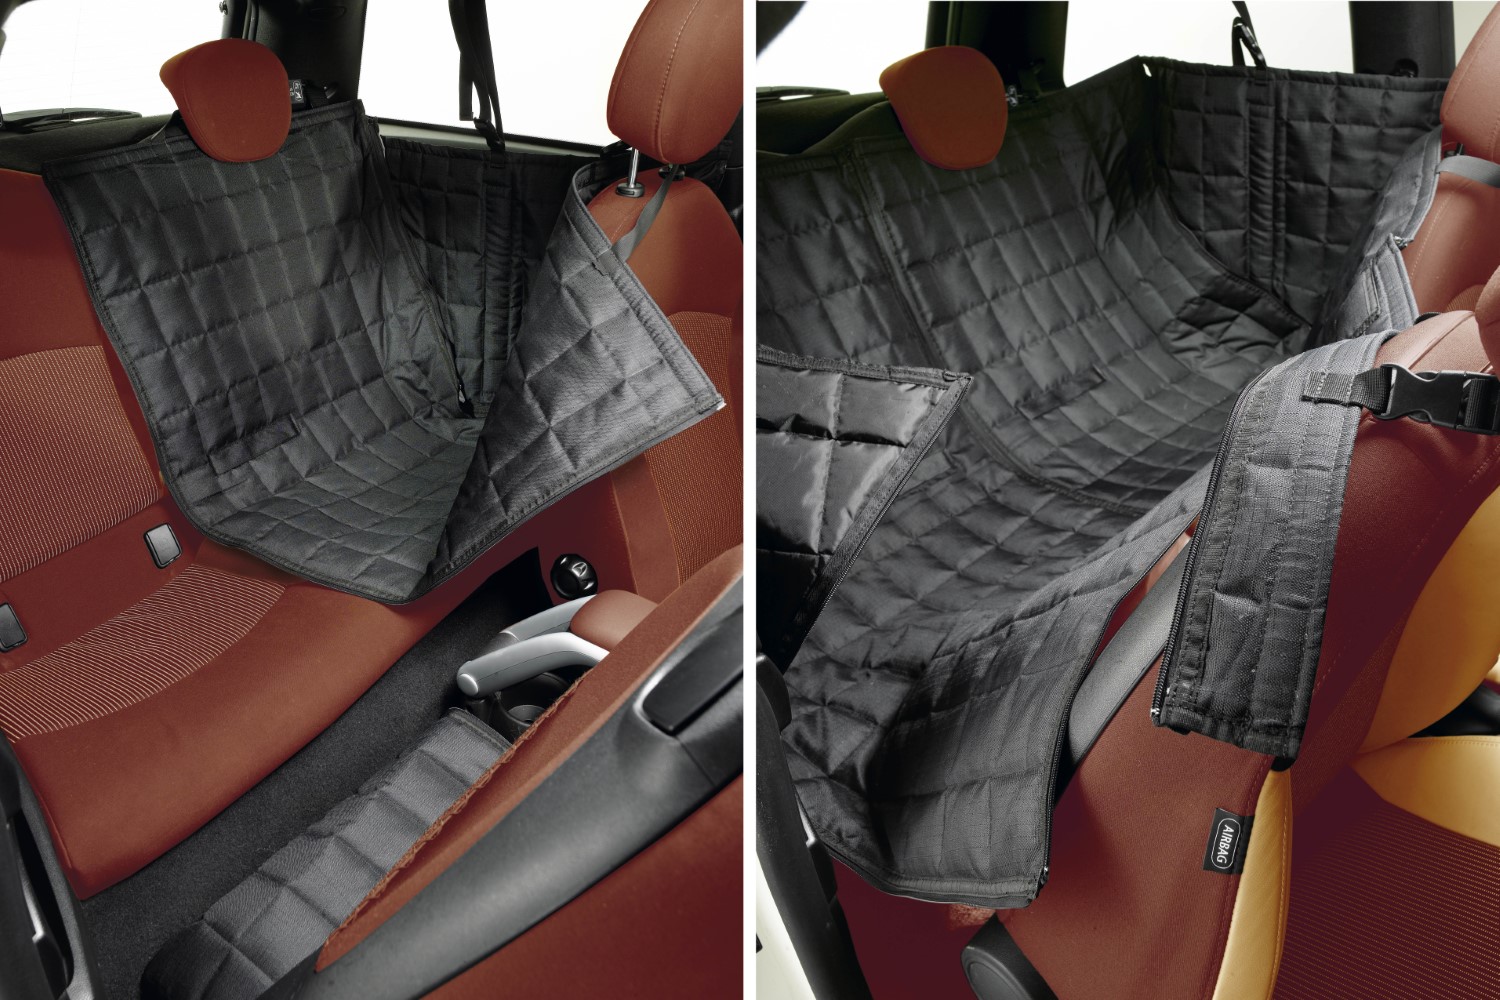 Couverture de protection pour voiture Allside Comfort